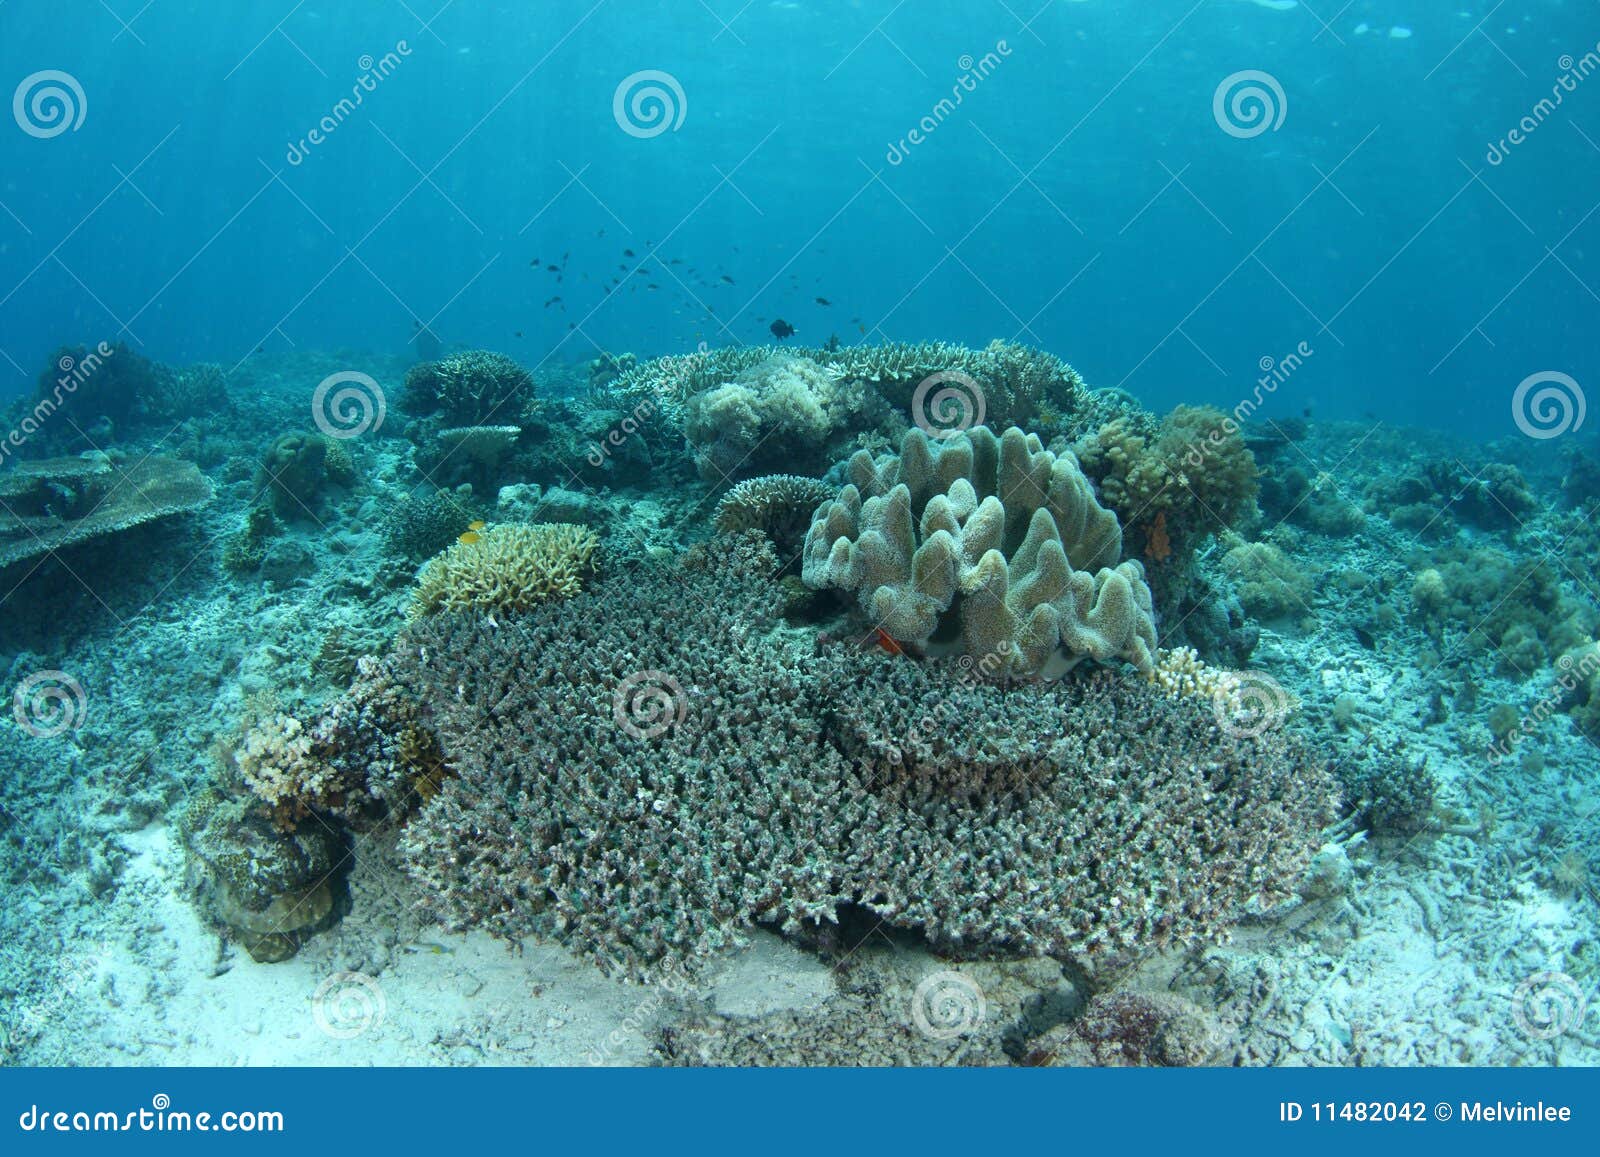 bleaching coral